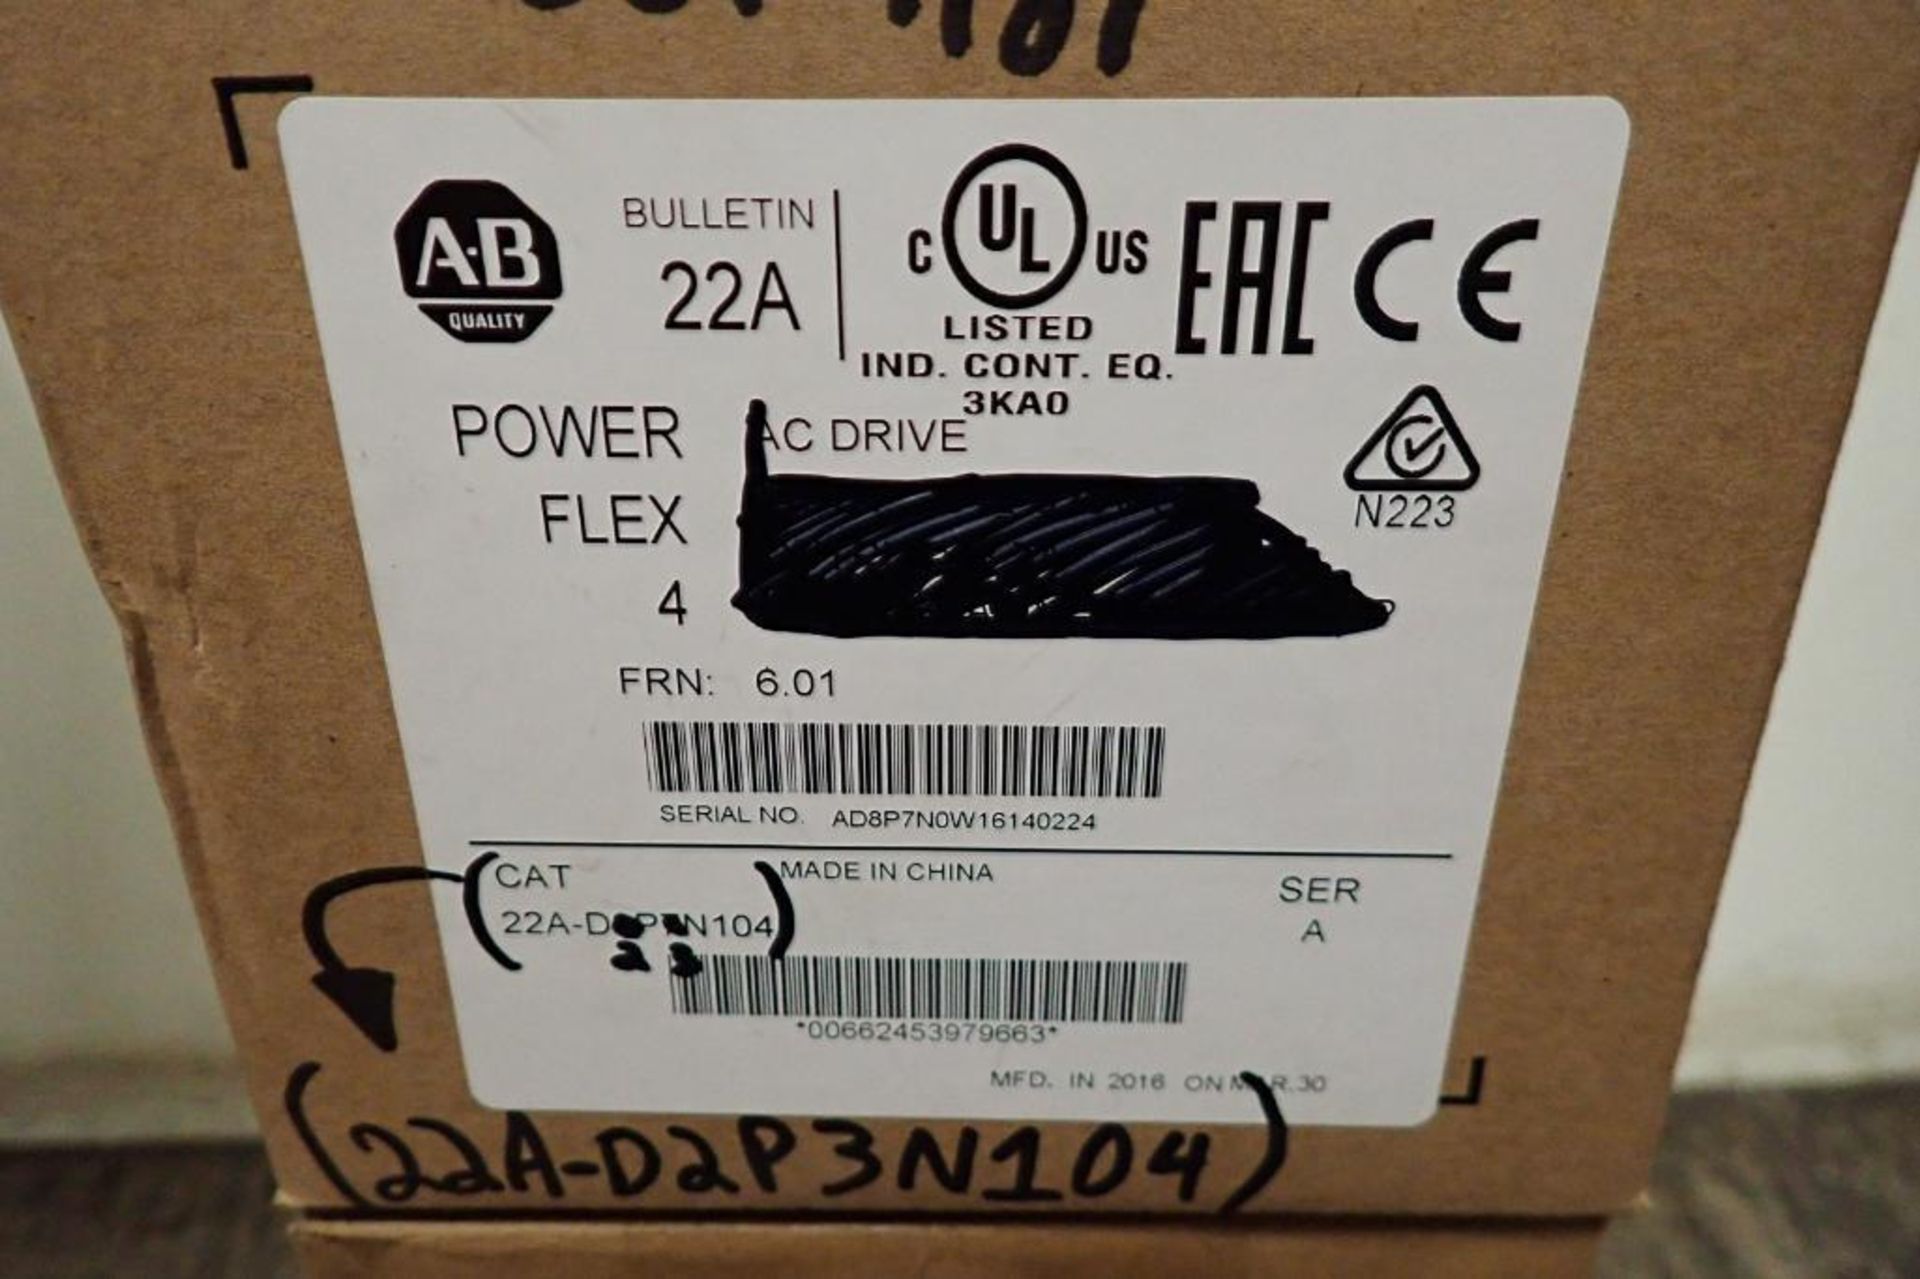 Unused Allen Bradley power flex 4 vfd, 1 hp, 380-480 volt, unused Allen Bradley power flex 4 vfd, 1 - Image 3 of 12